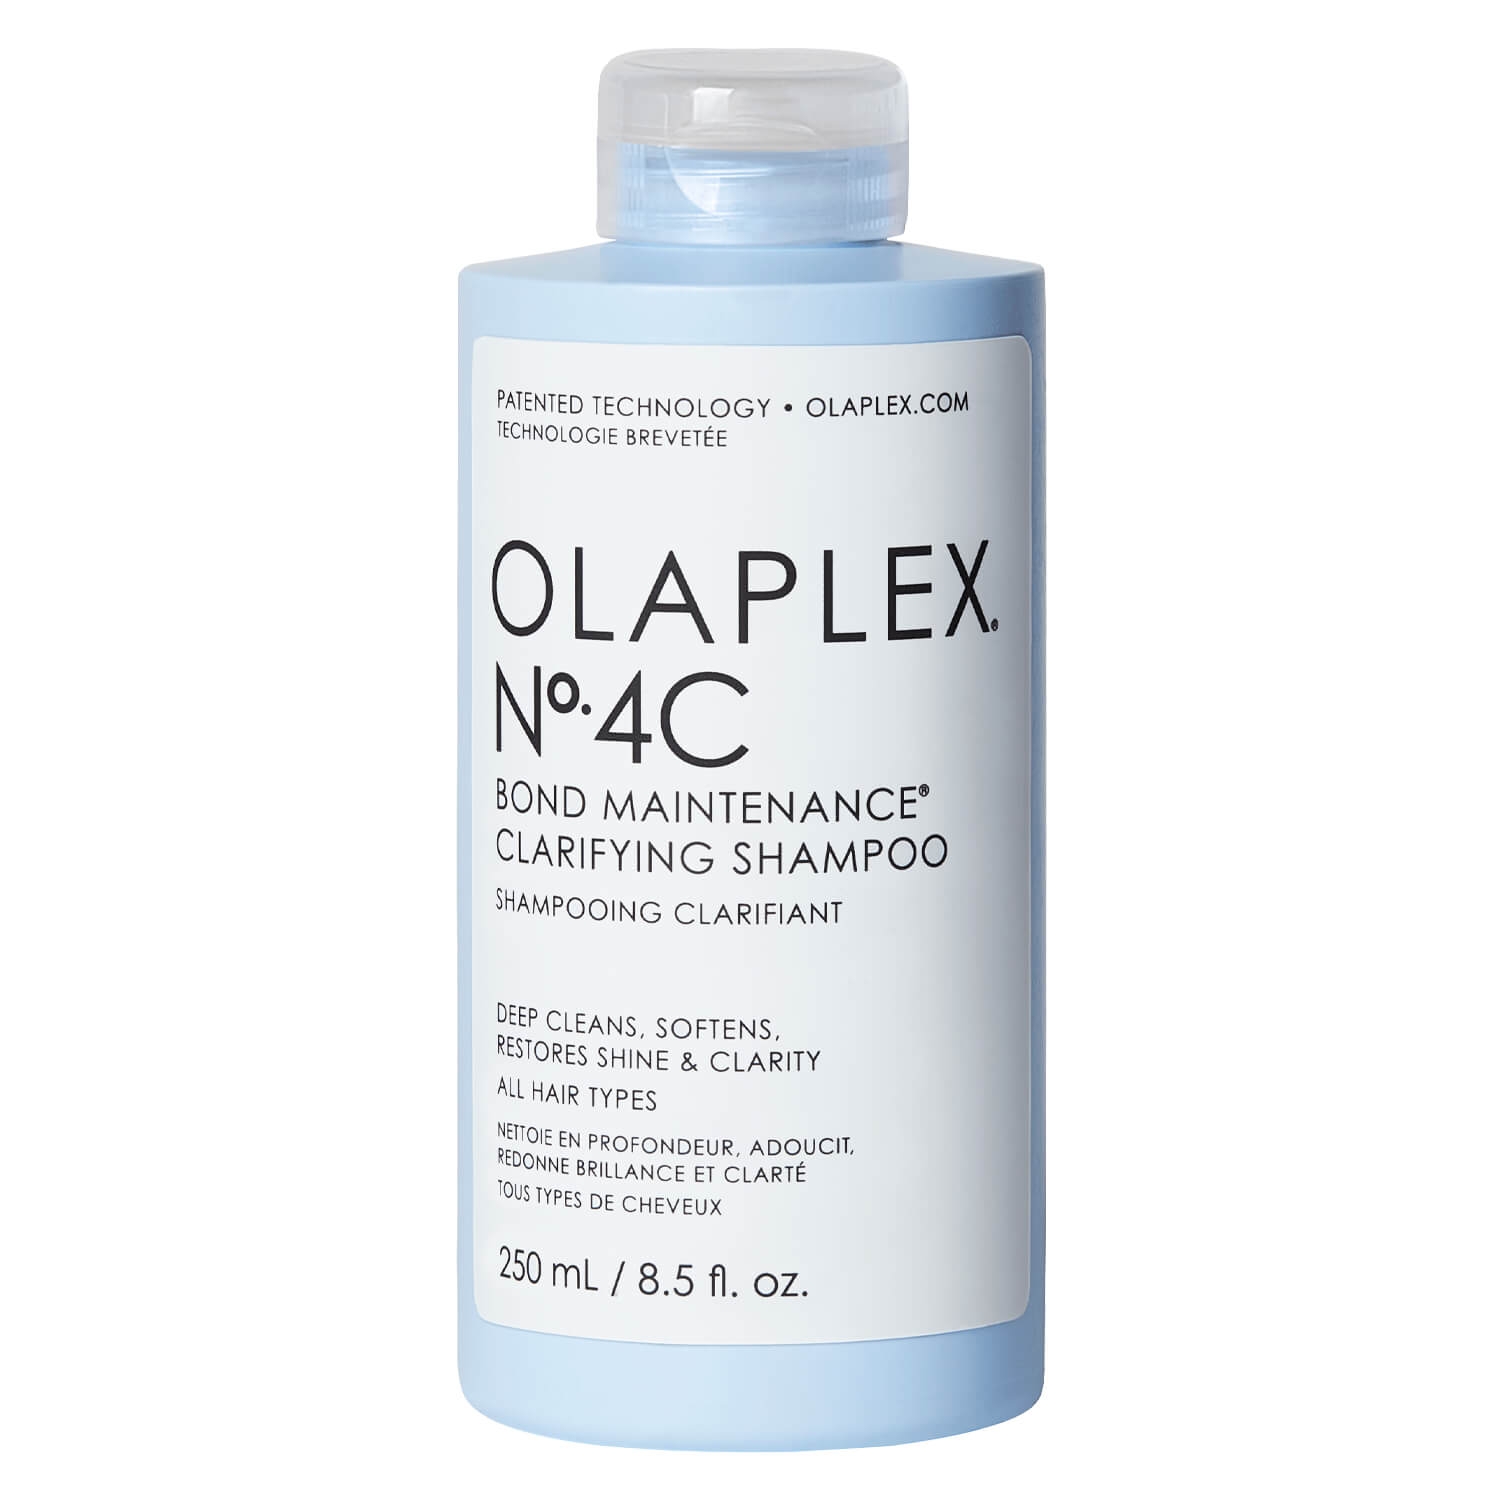 Product image from Olaplex - Bond Maintenance Clarifying Shampoo No. 4C